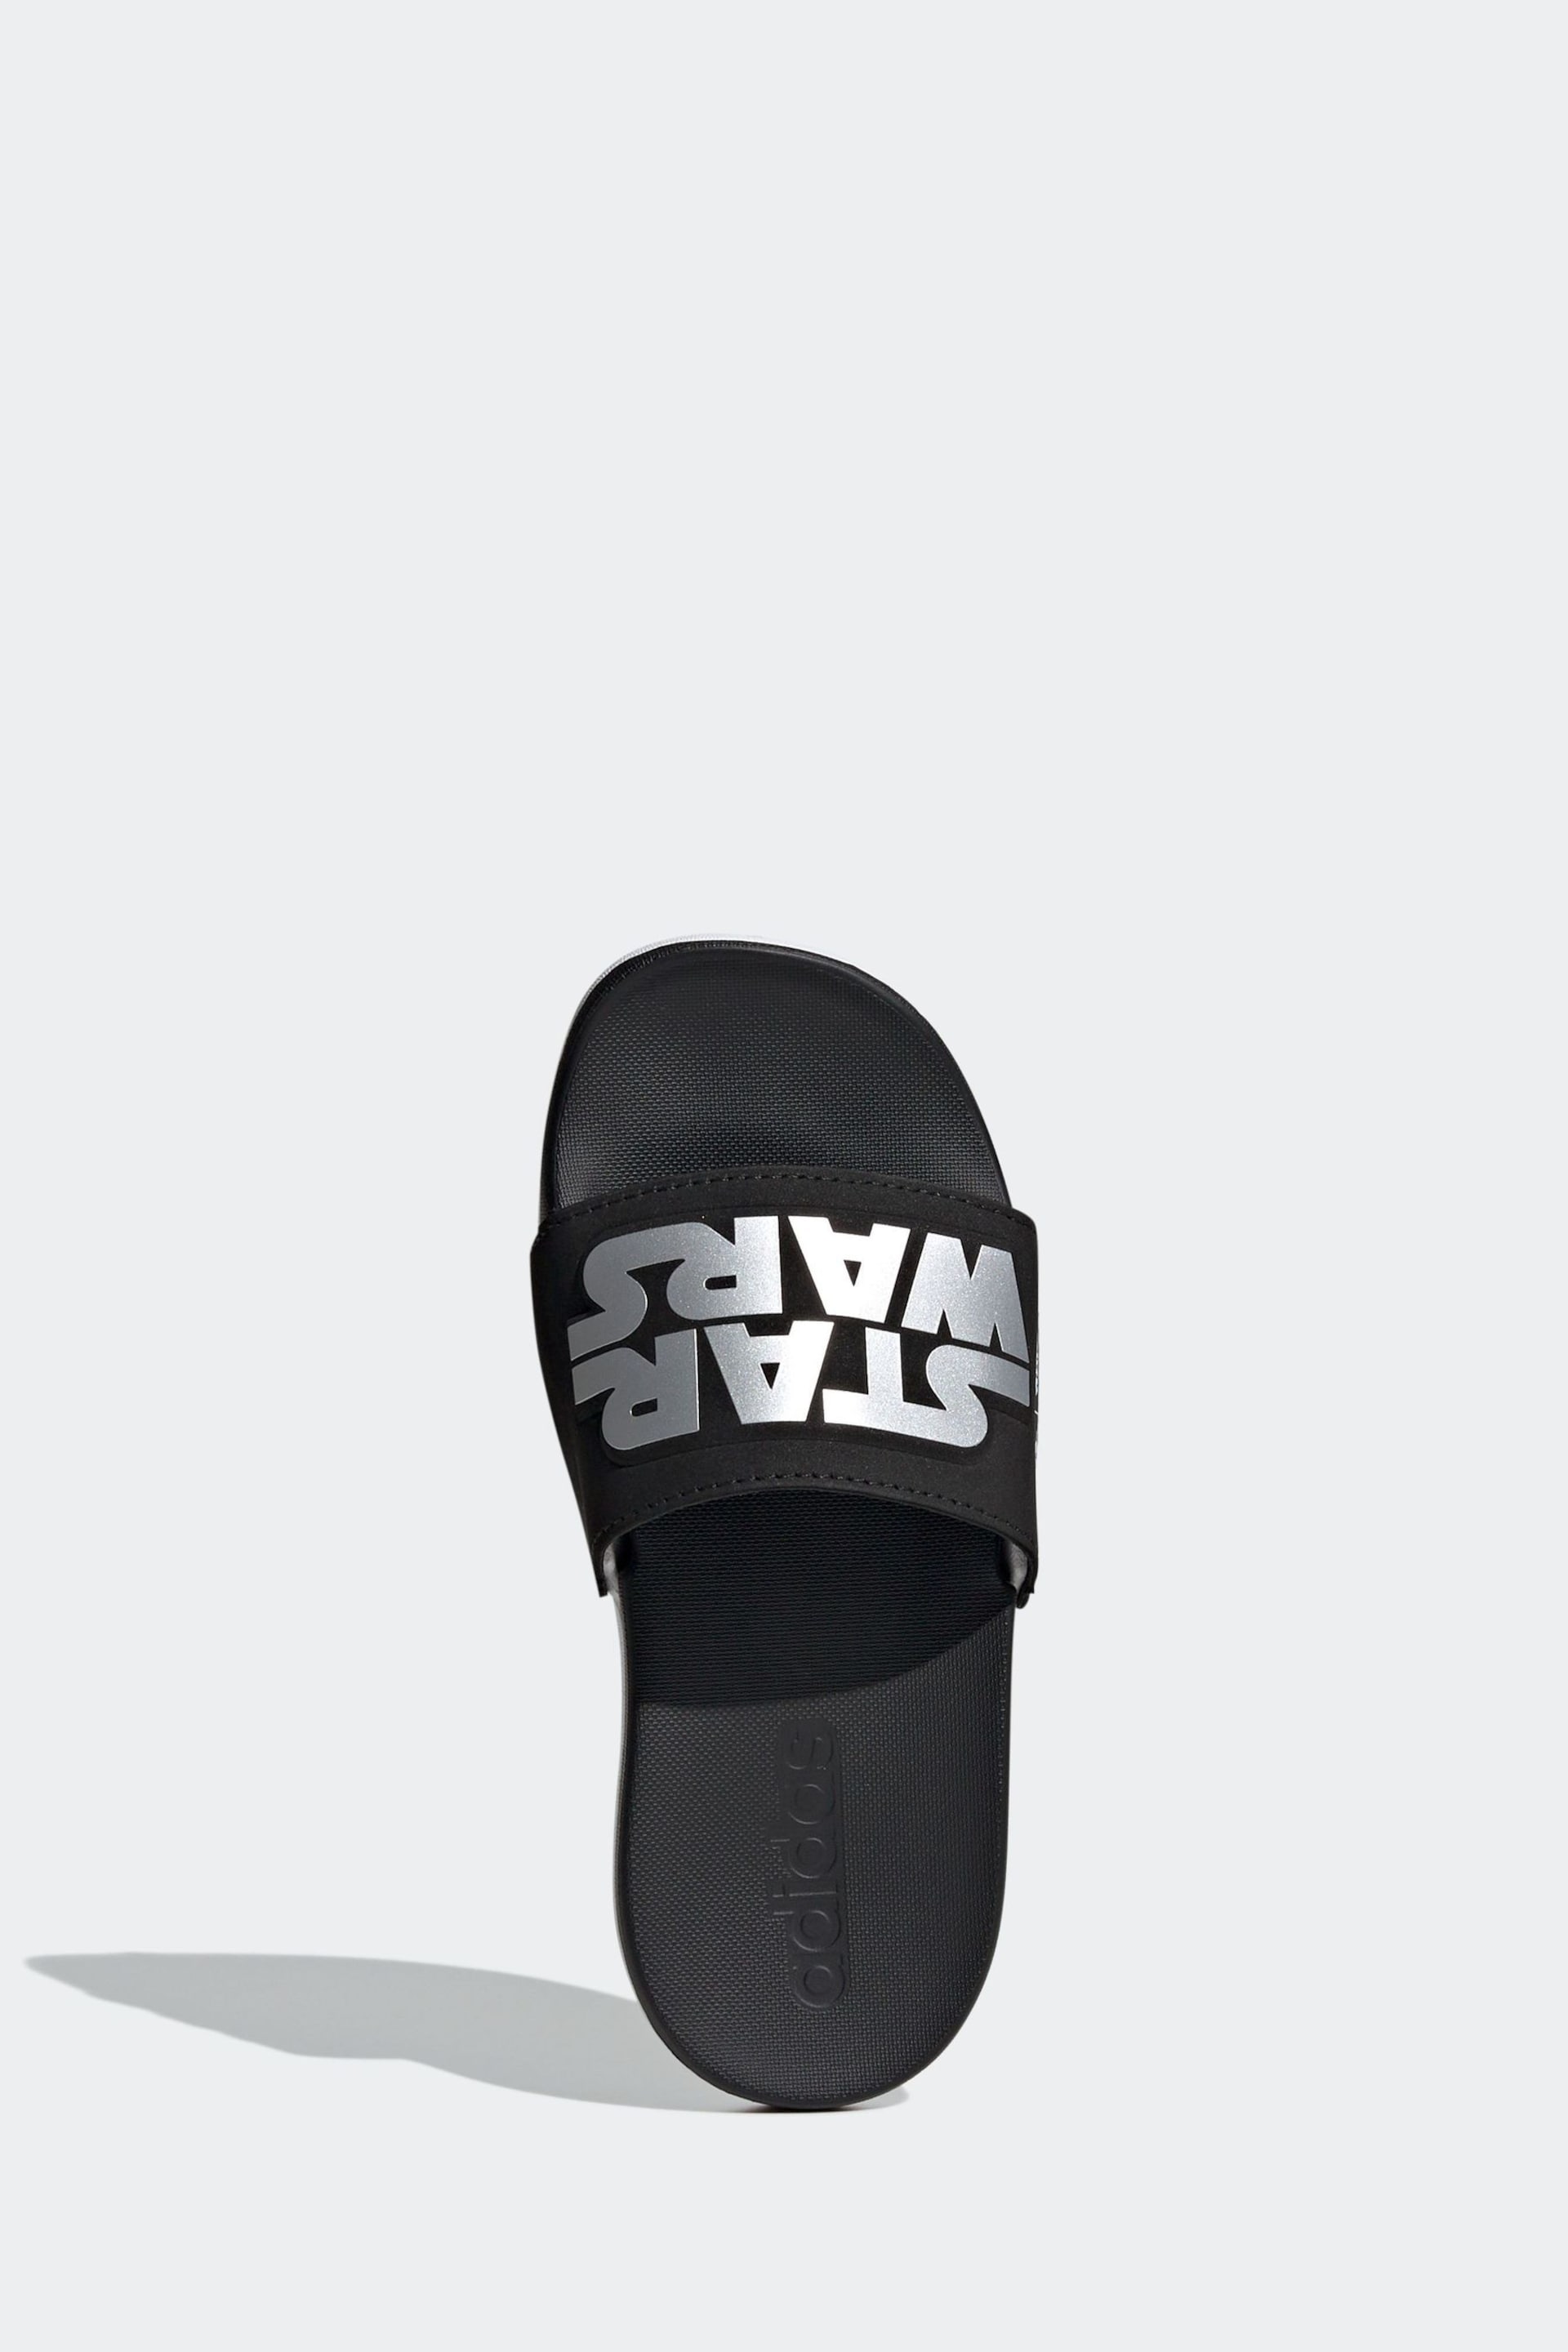 adidas Black Adilette Comfort Star Wars Sandals - Image 6 of 9